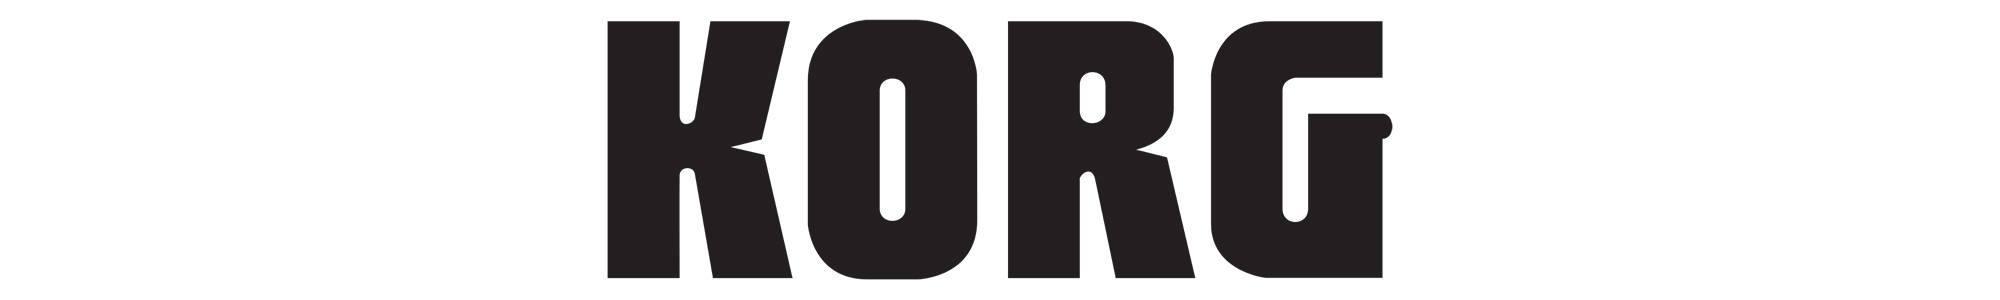 Korg Logo Black on White Background Landing Header